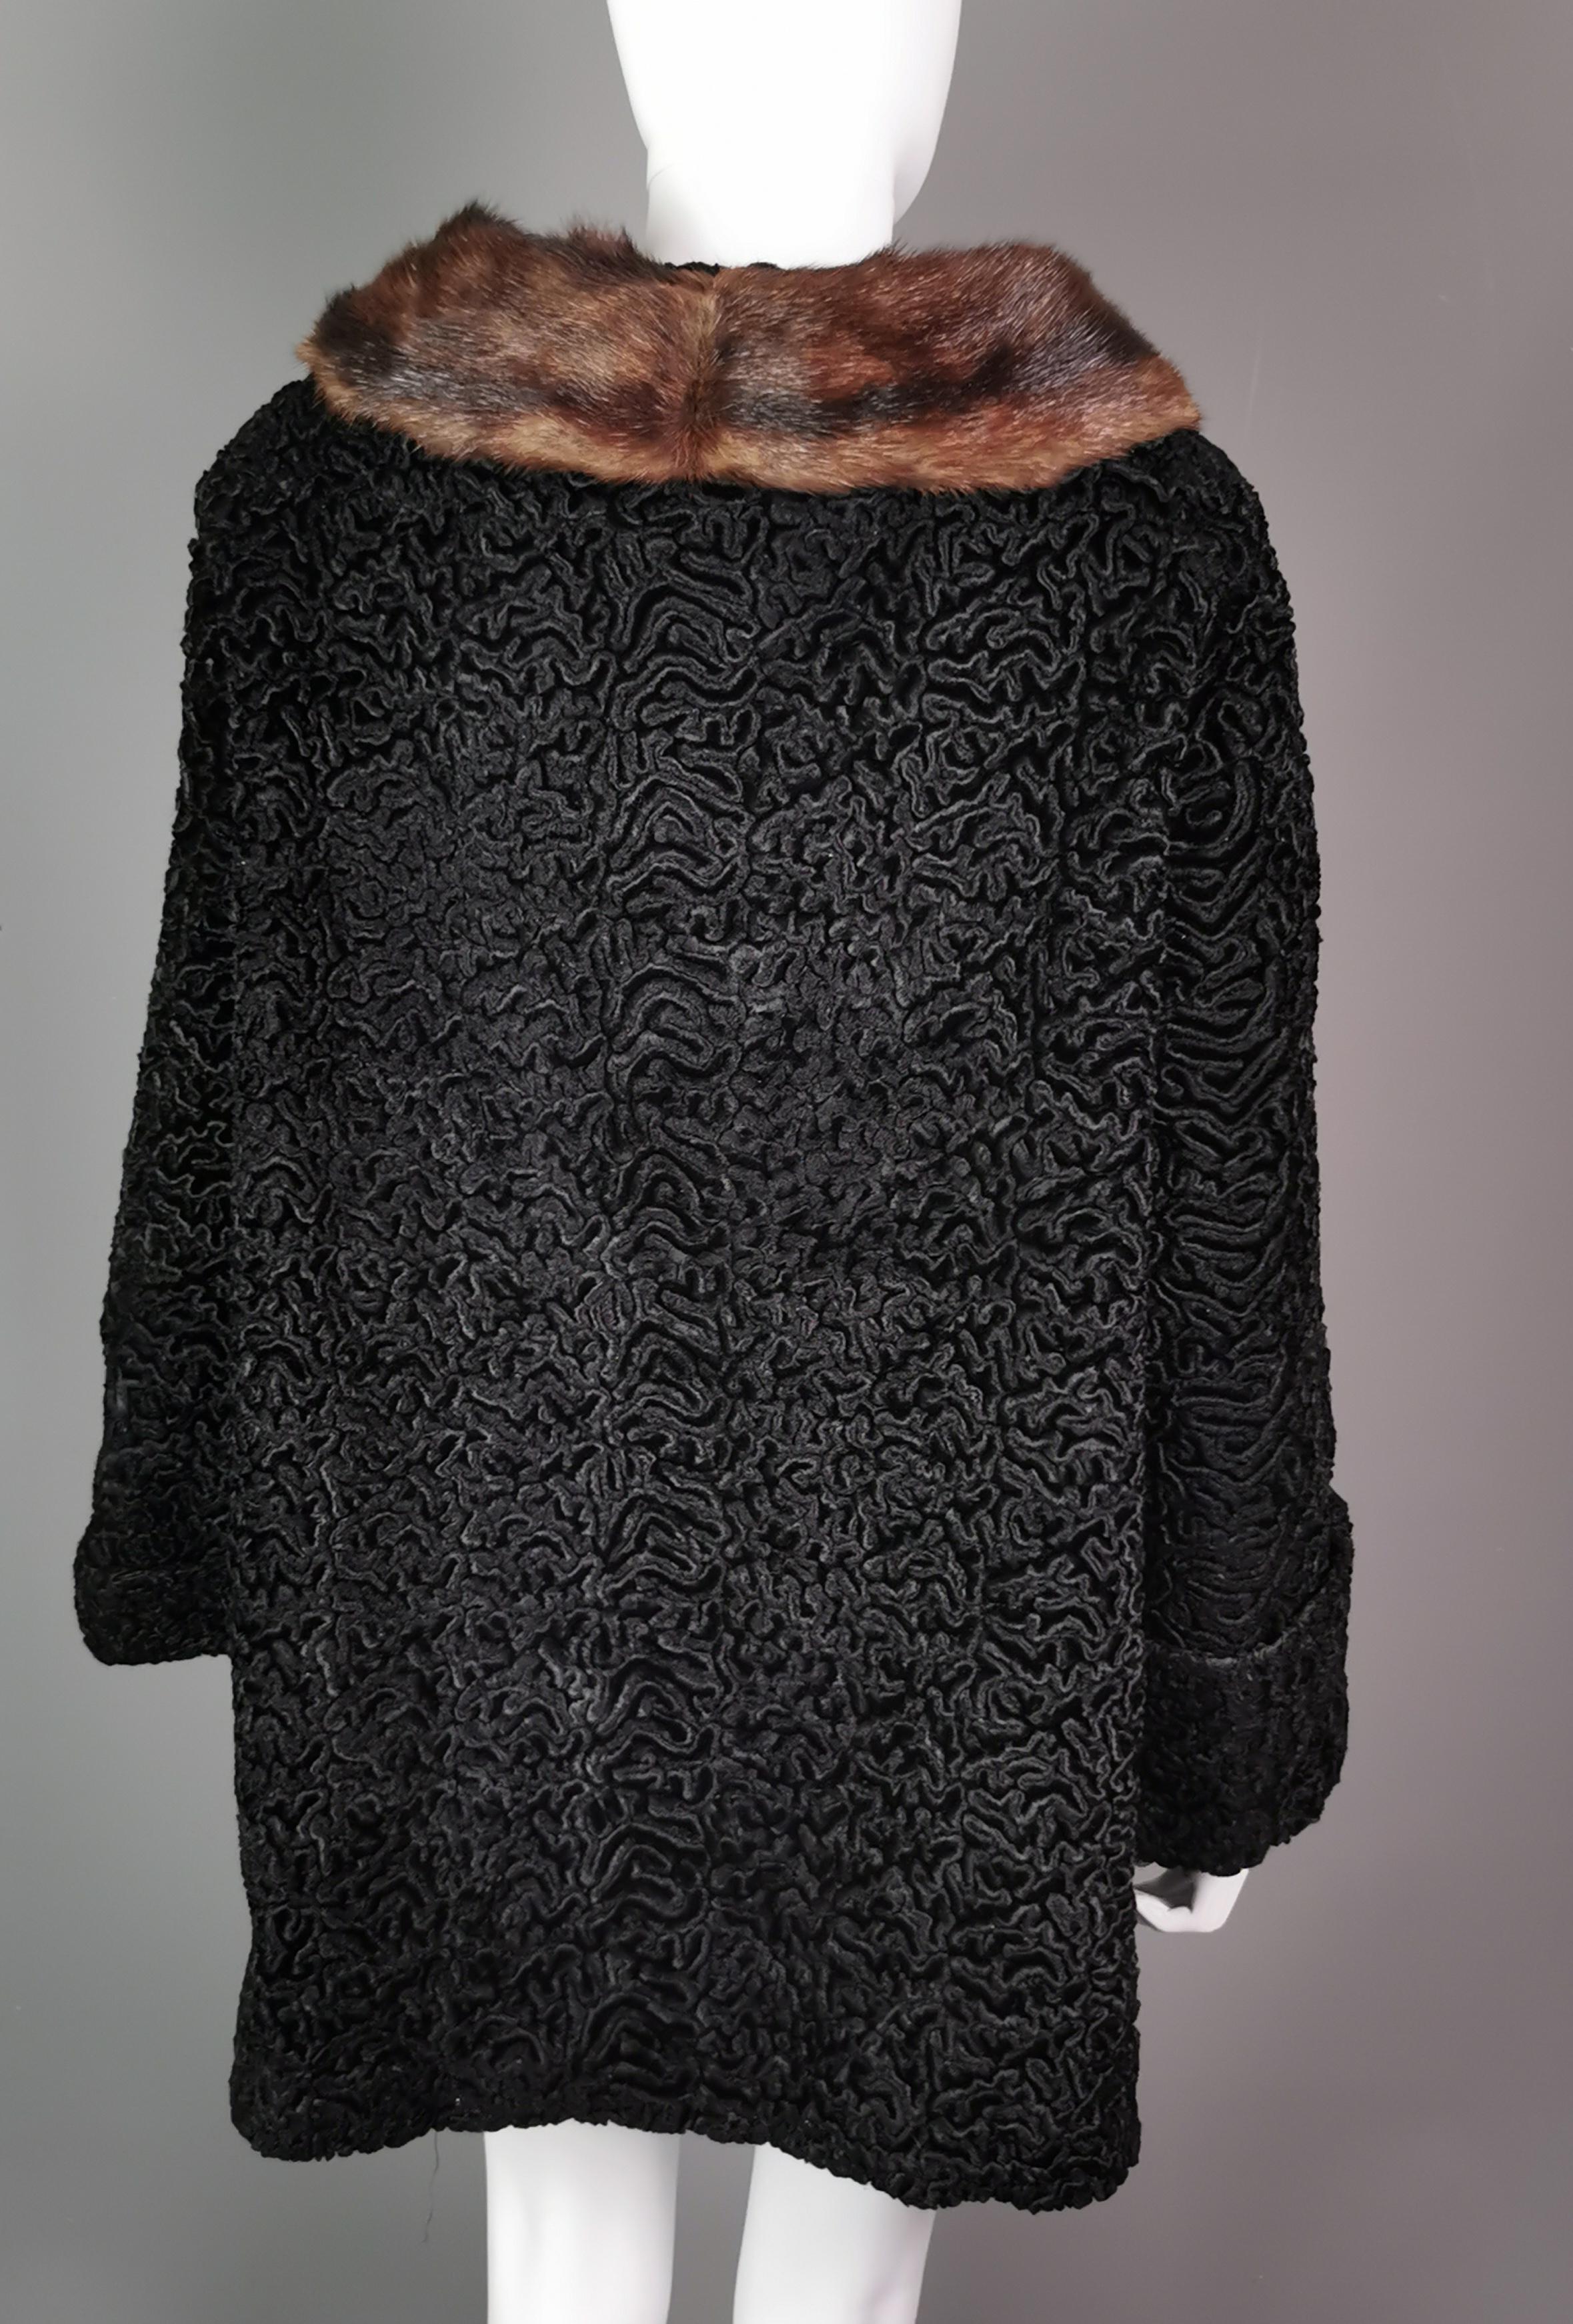 Vintage 1950s Astrakhan coat, mink fur collar  For Sale 6